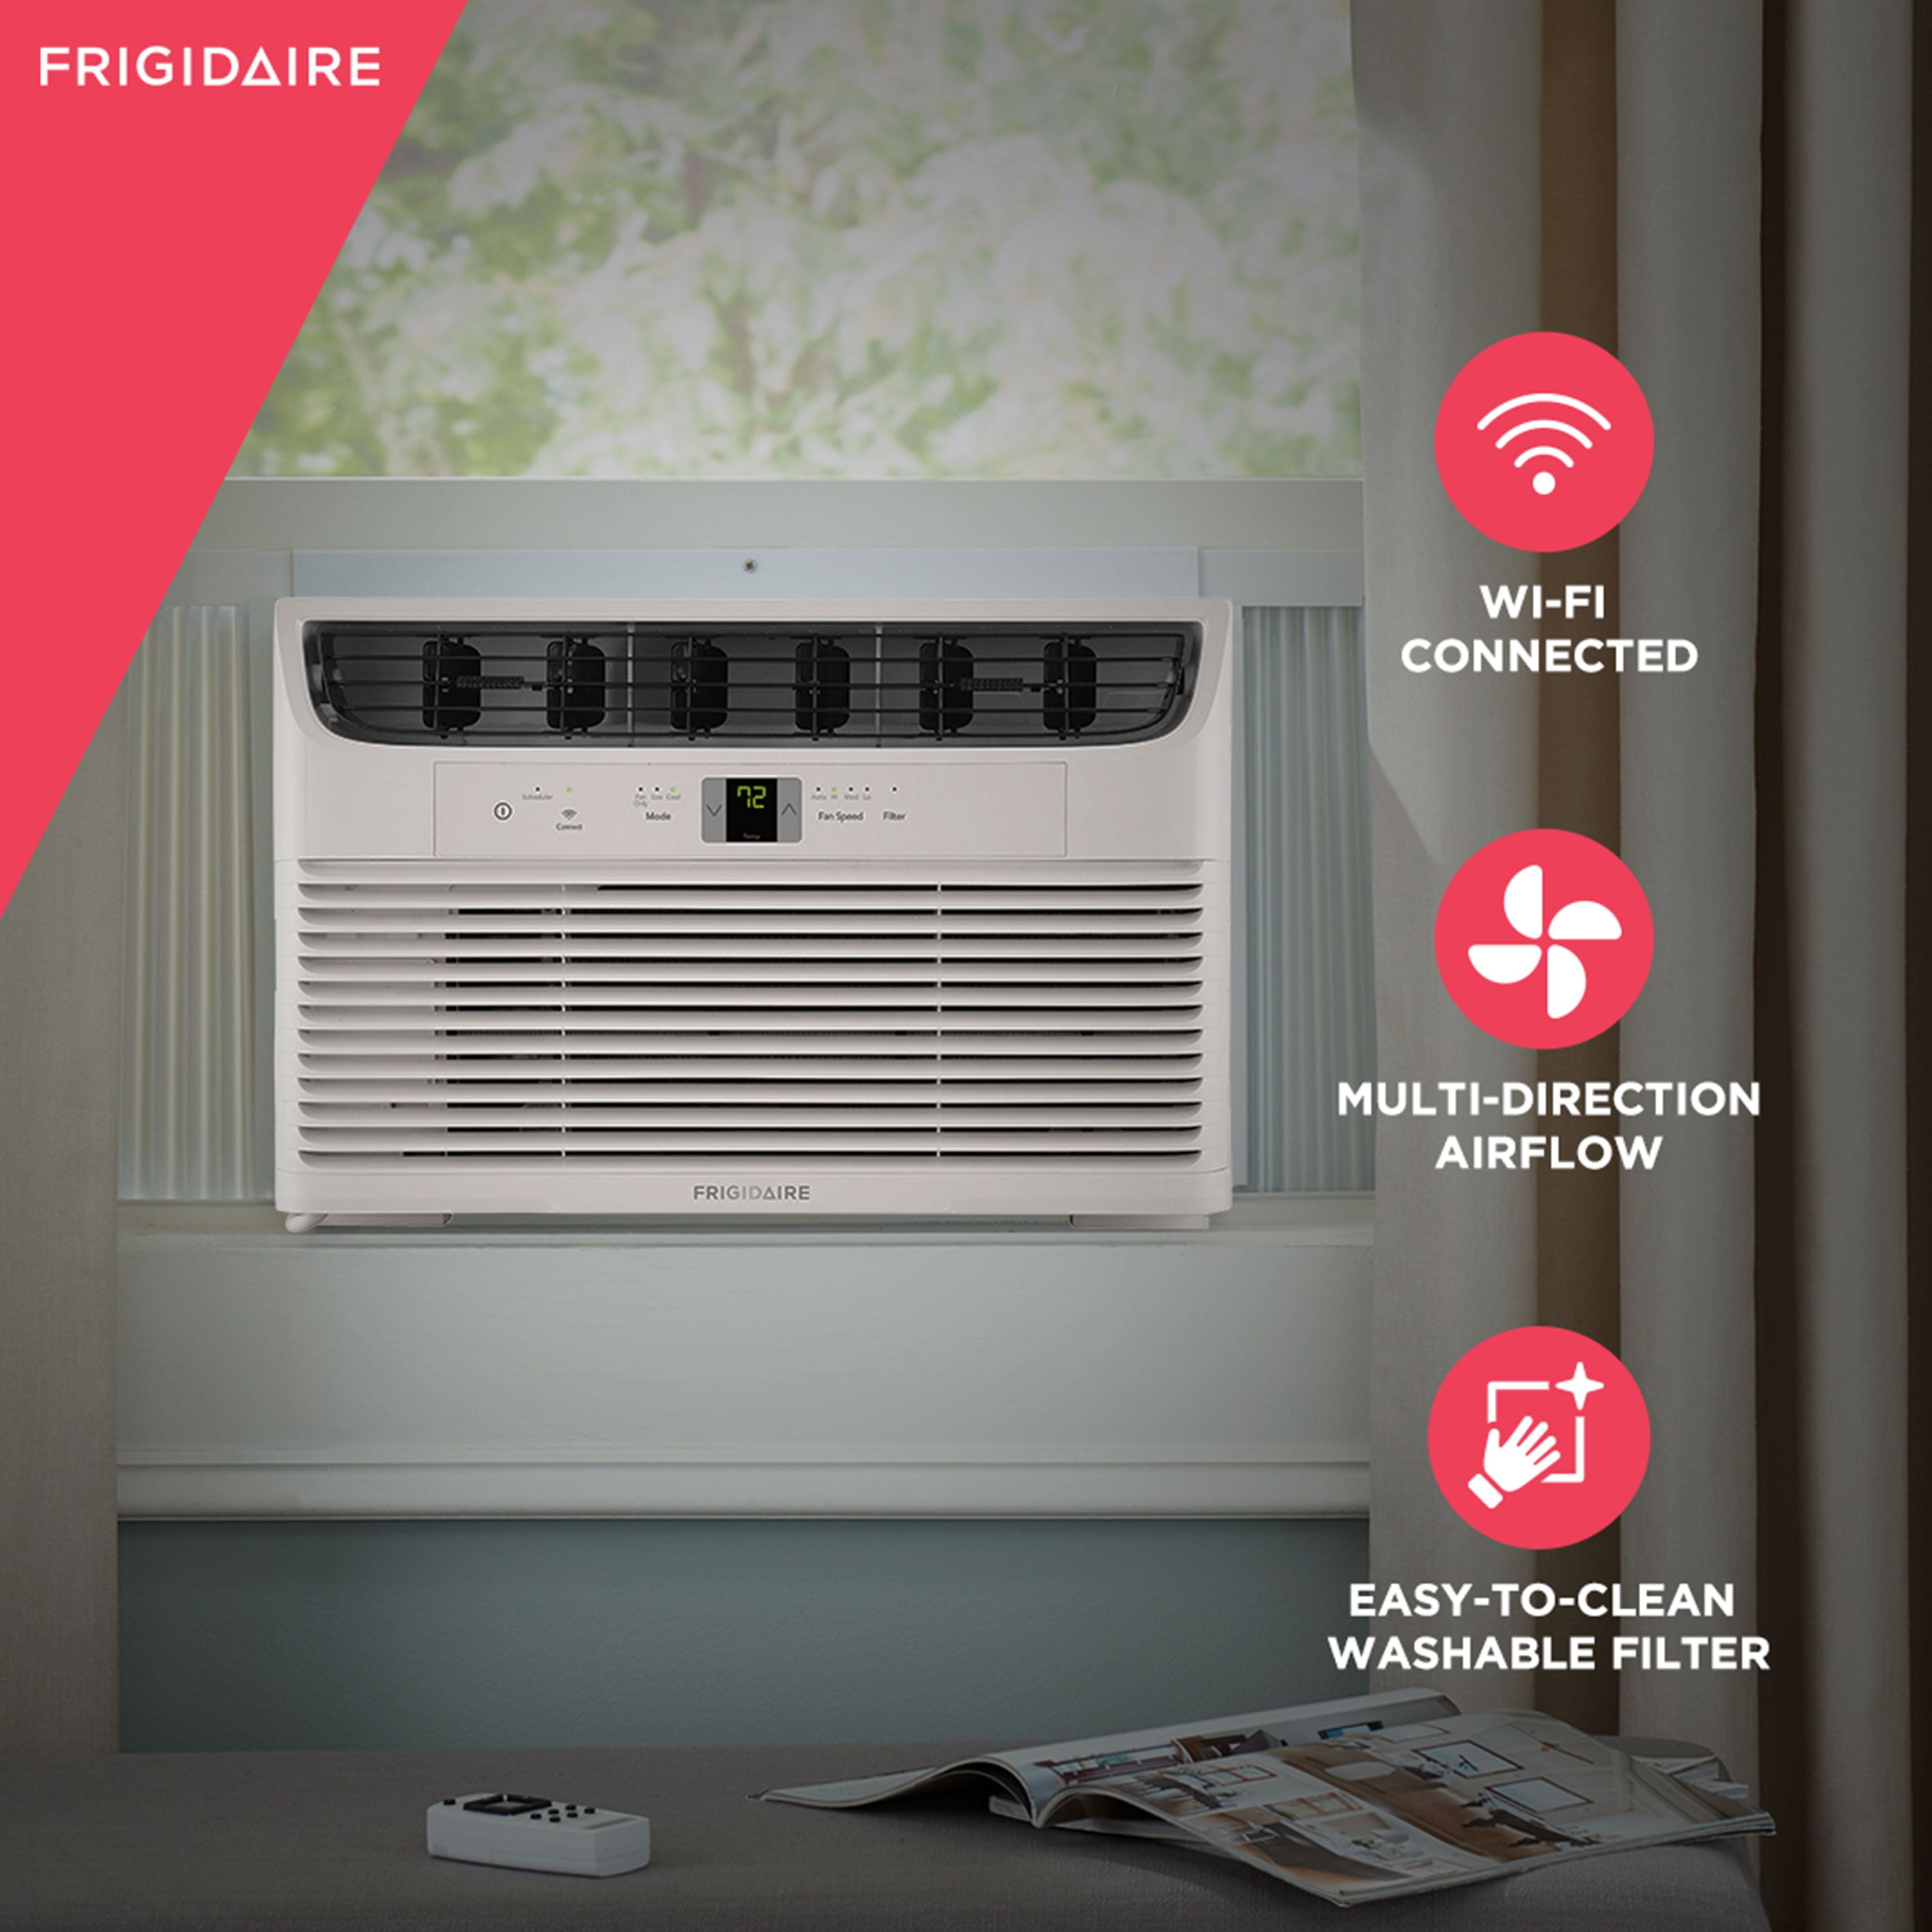 Koldfront WAC12001W 12,000 BTU Window Heat/Cool Air Conditioner White